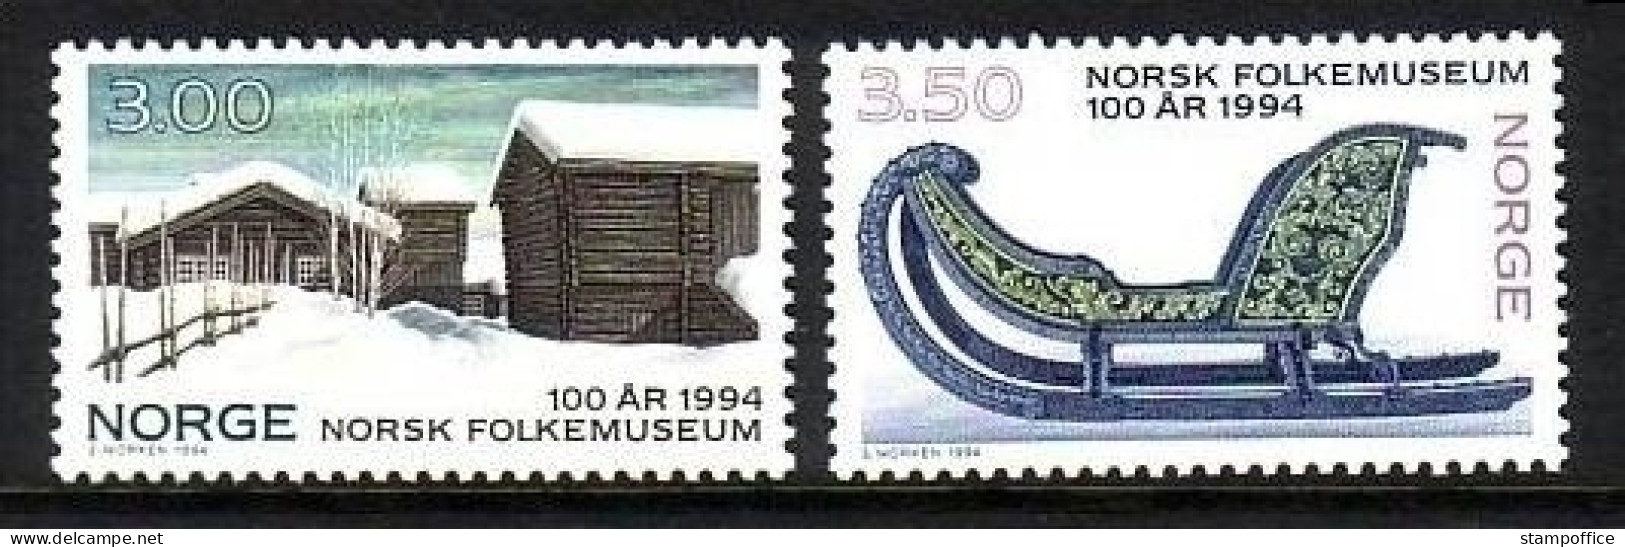 NORWEGEN MI-NR. 1161-1162 POSTFRISCH(MINT) FREILICHTMUSEUM - BAUERNHAUS, PFERDESCHLITTEN - Museen